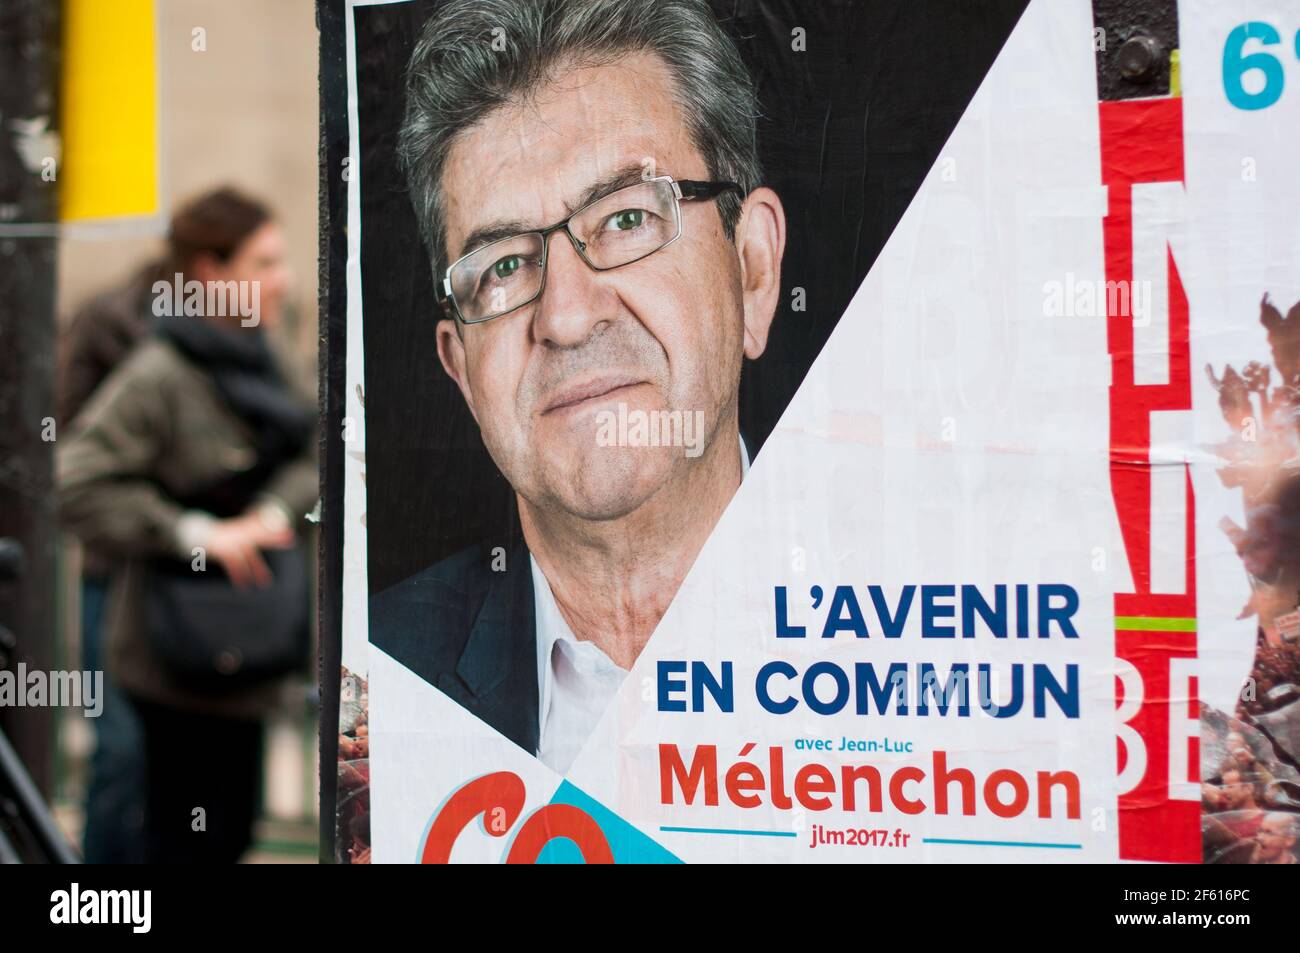 PARIGI, FRANCIA - 28 MARZO 2017 : poster della campagna Jean-Luc Mélenchon per le elezioni presidenziali francesi. Foto Stock